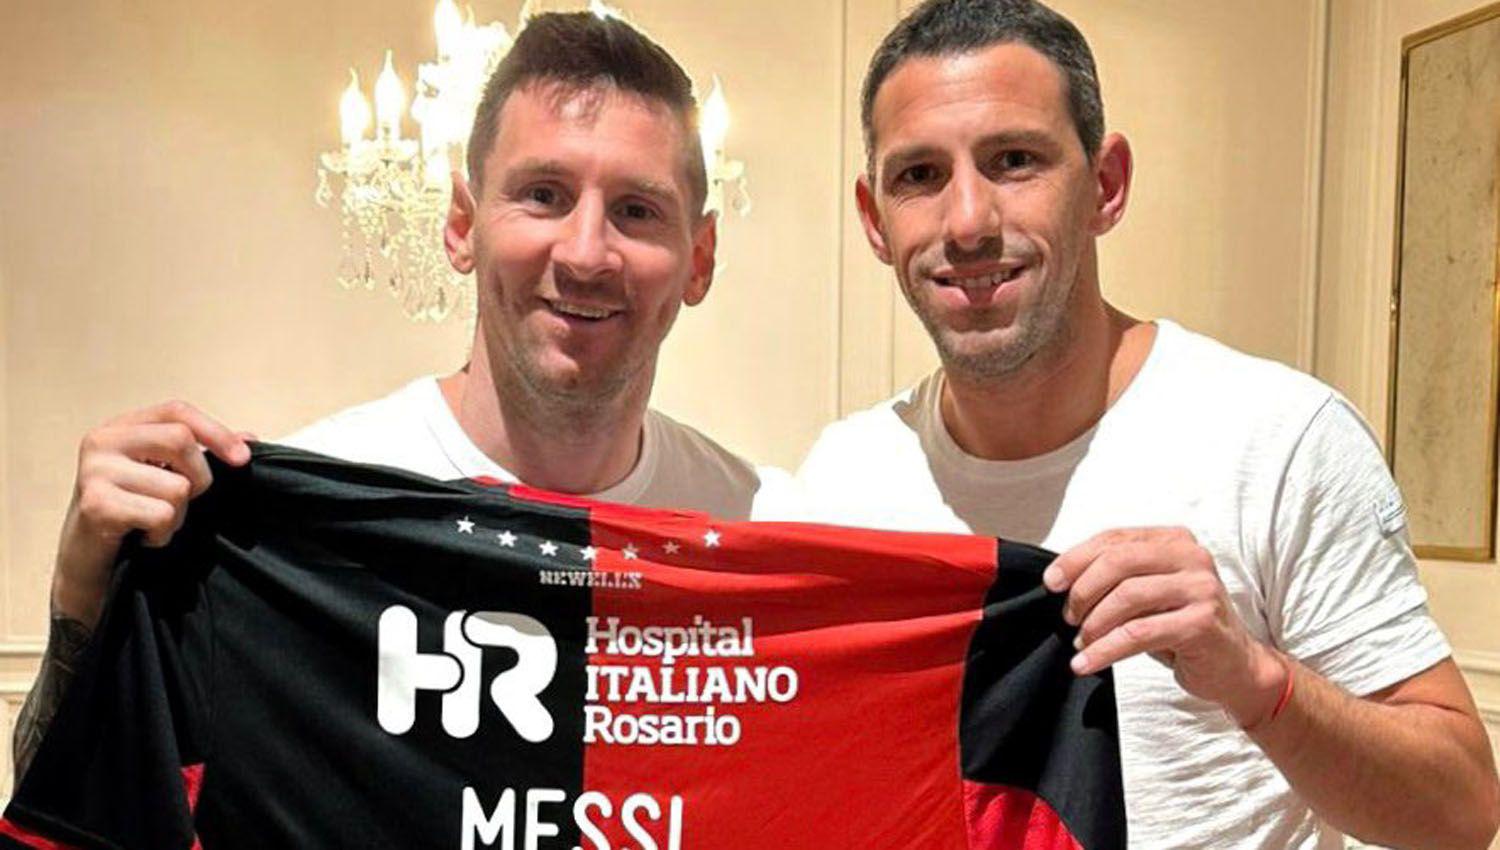 Maxi Rodriacuteguez y su despedida- Messi es uno de los invitados